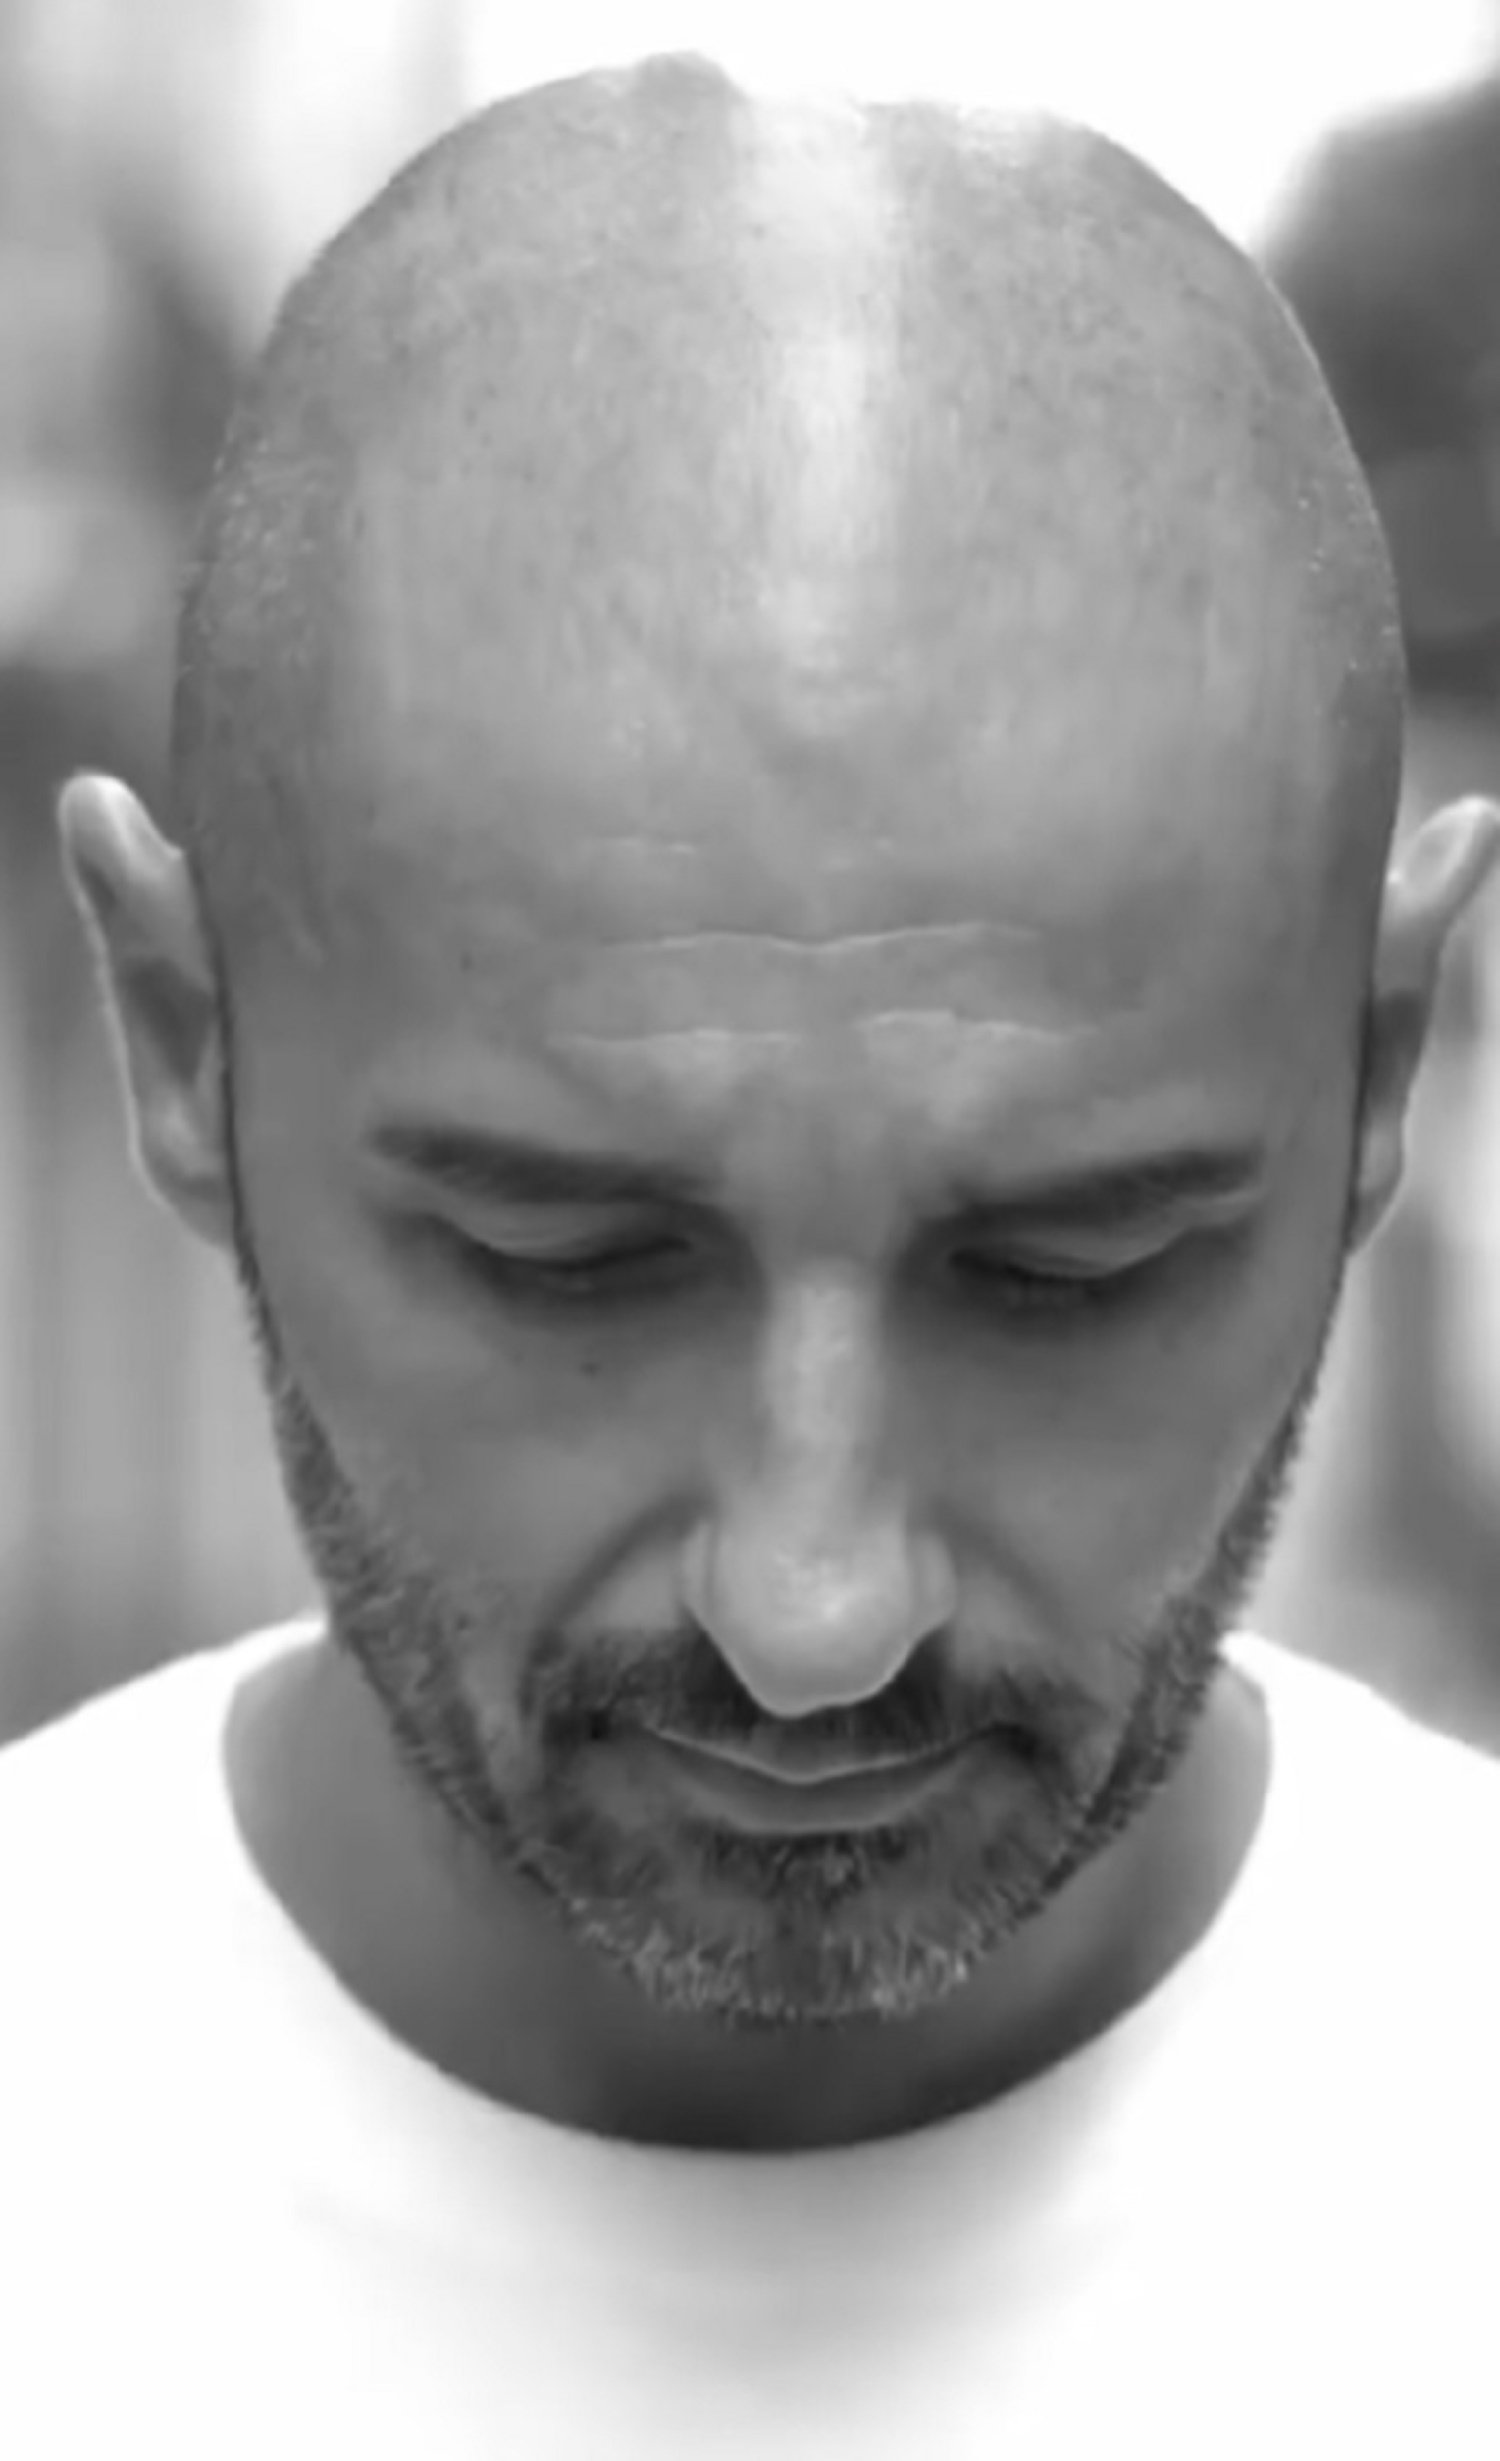 El querido actor catalán Alain Hernández hace llorar, conmovedor adiós a un compañero de vida: "Cómo duele"